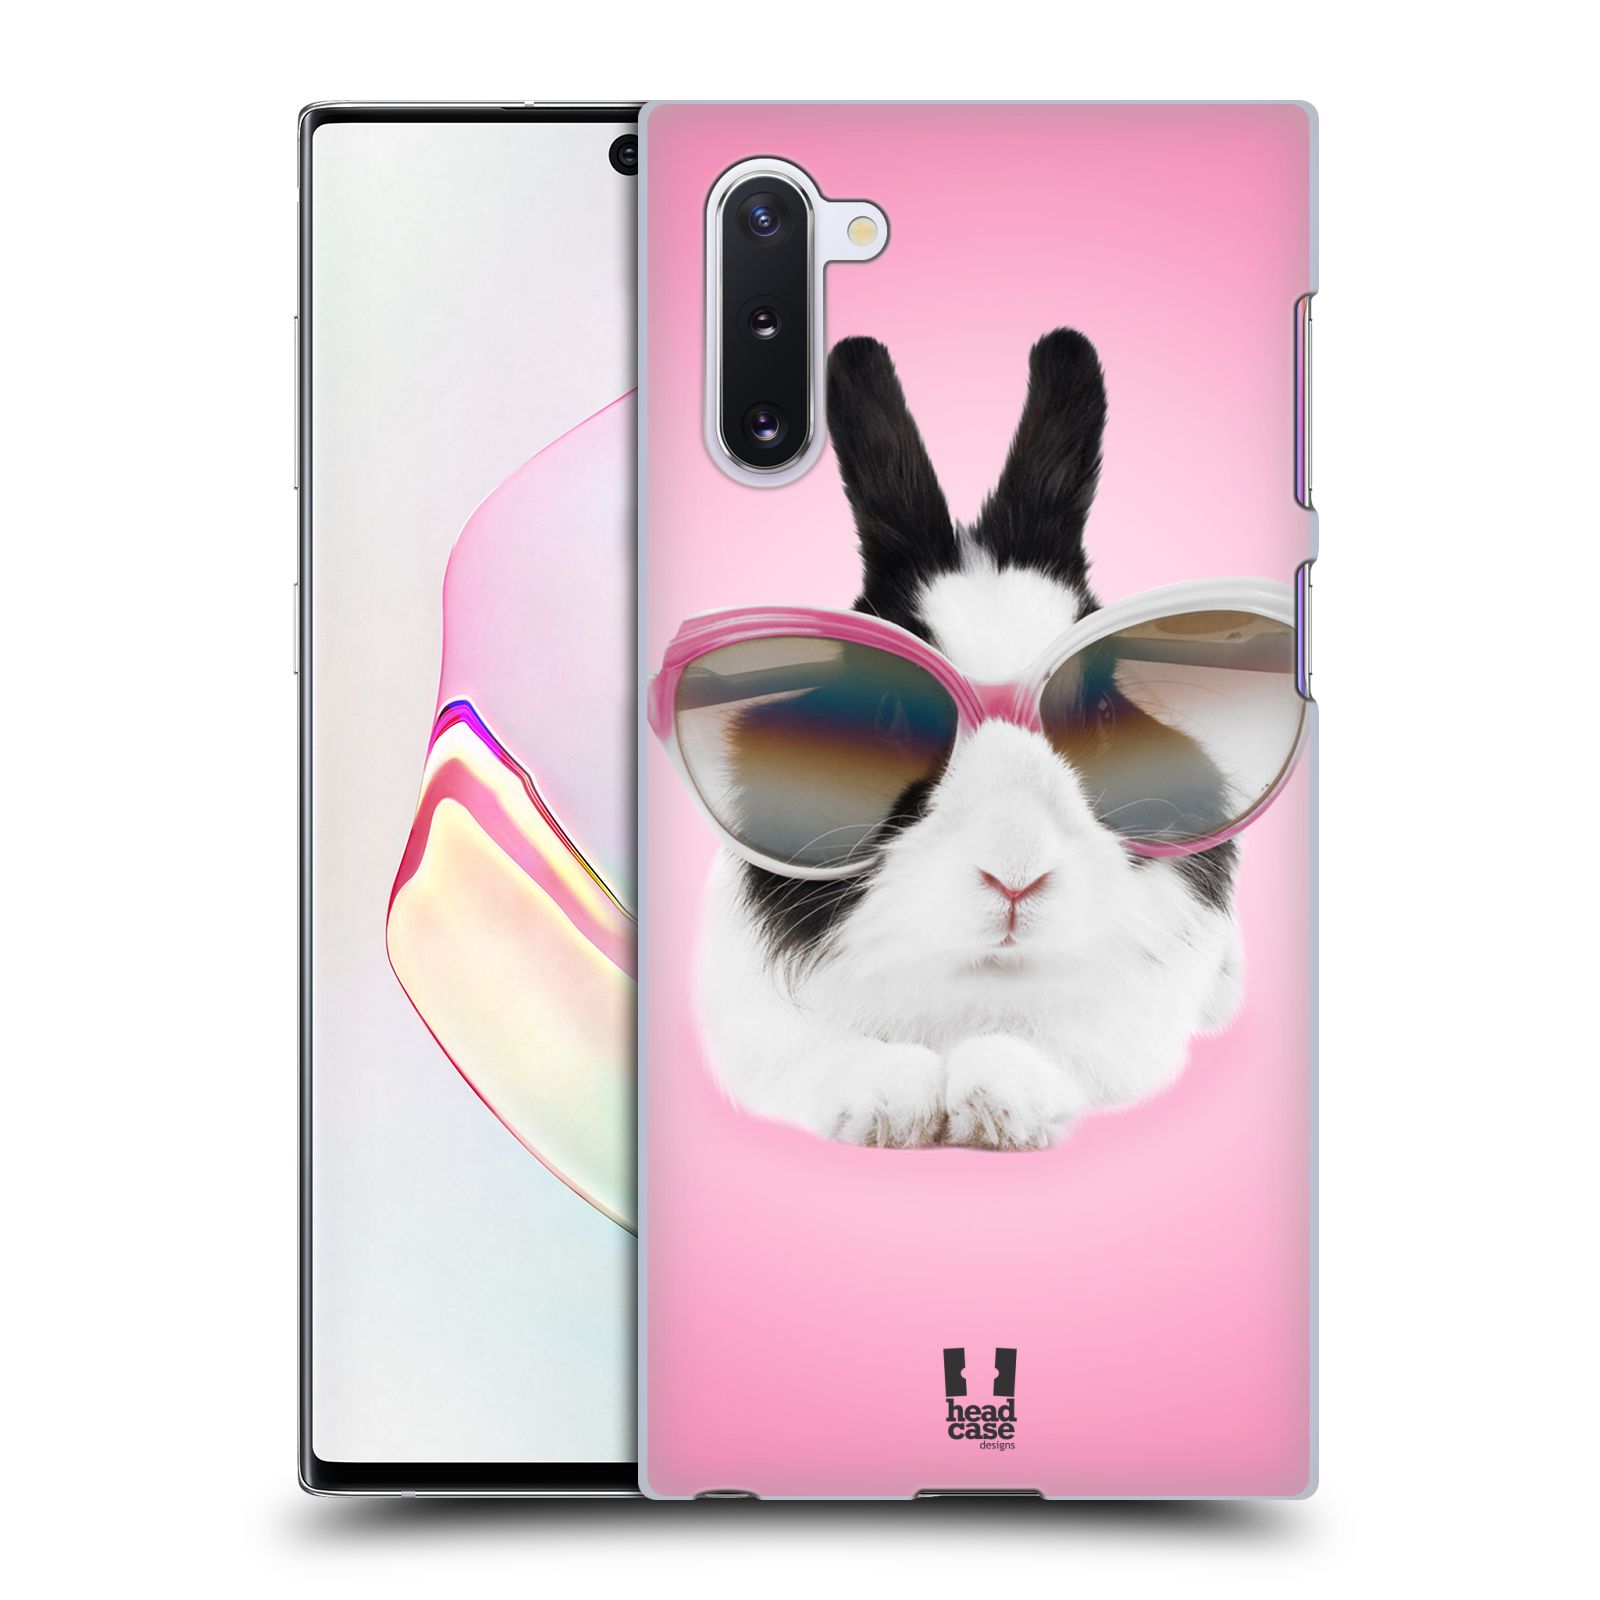 Pouzdro na mobil Samsung Galaxy Note 10 - HEAD CASE - vzor Legrační zvířátka roztomilý králíček s brýlemi růžová